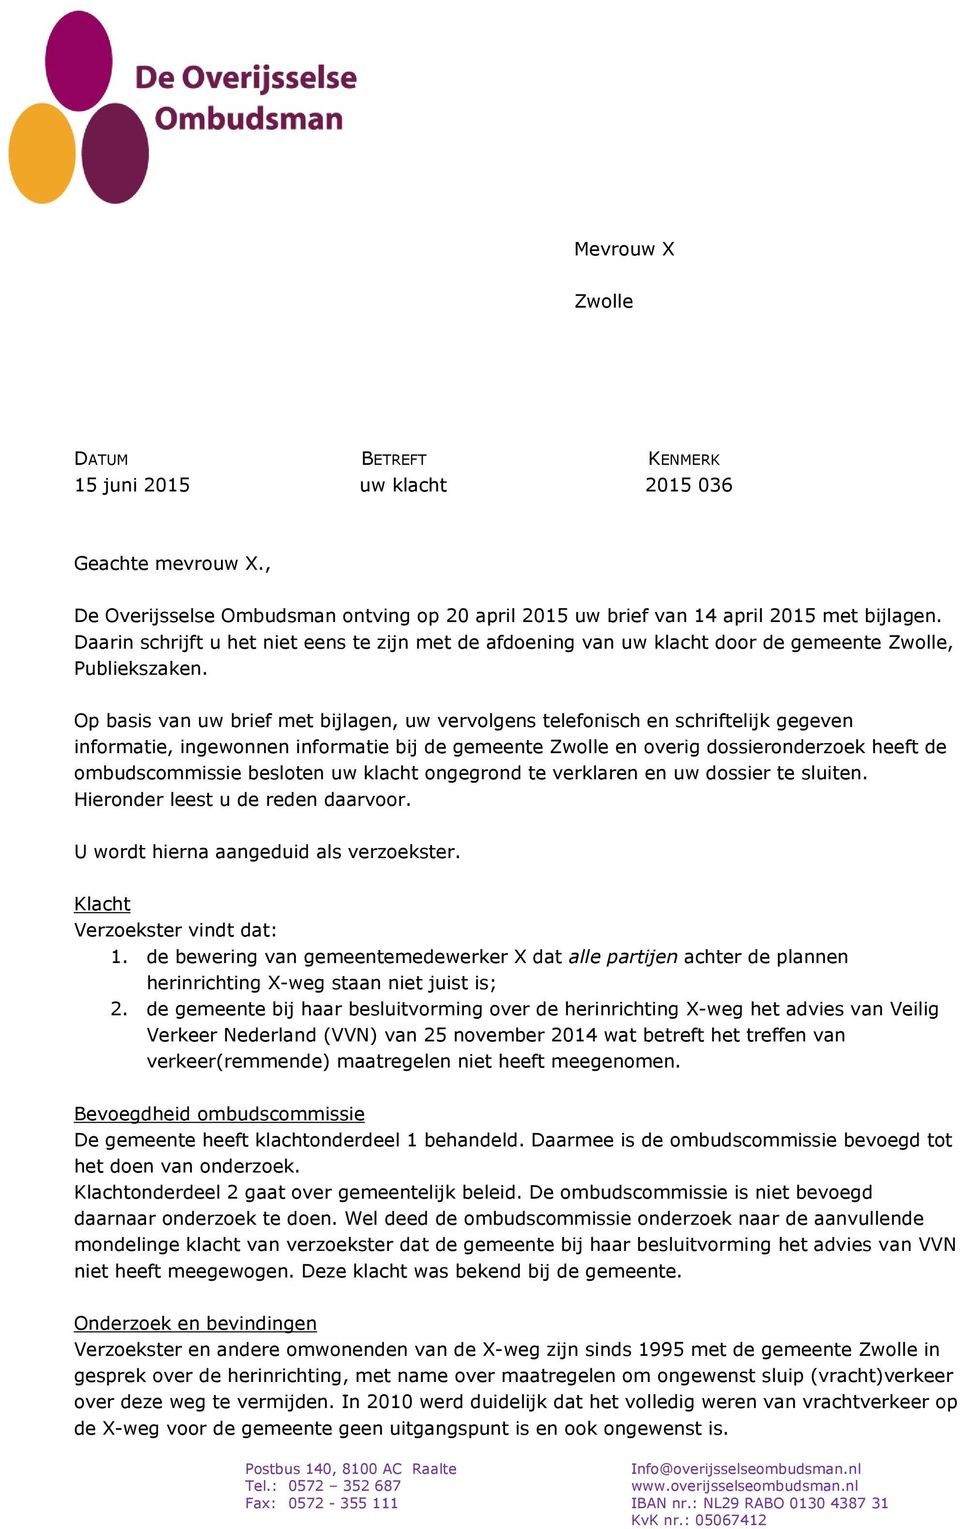 Op basis van uw brief met bijlagen, uw vervolgens telefonisch en schriftelijk gegeven informatie, ingewonnen informatie bij de gemeente Zwolle en overig dossieronderzoek heeft de ombudscommissie